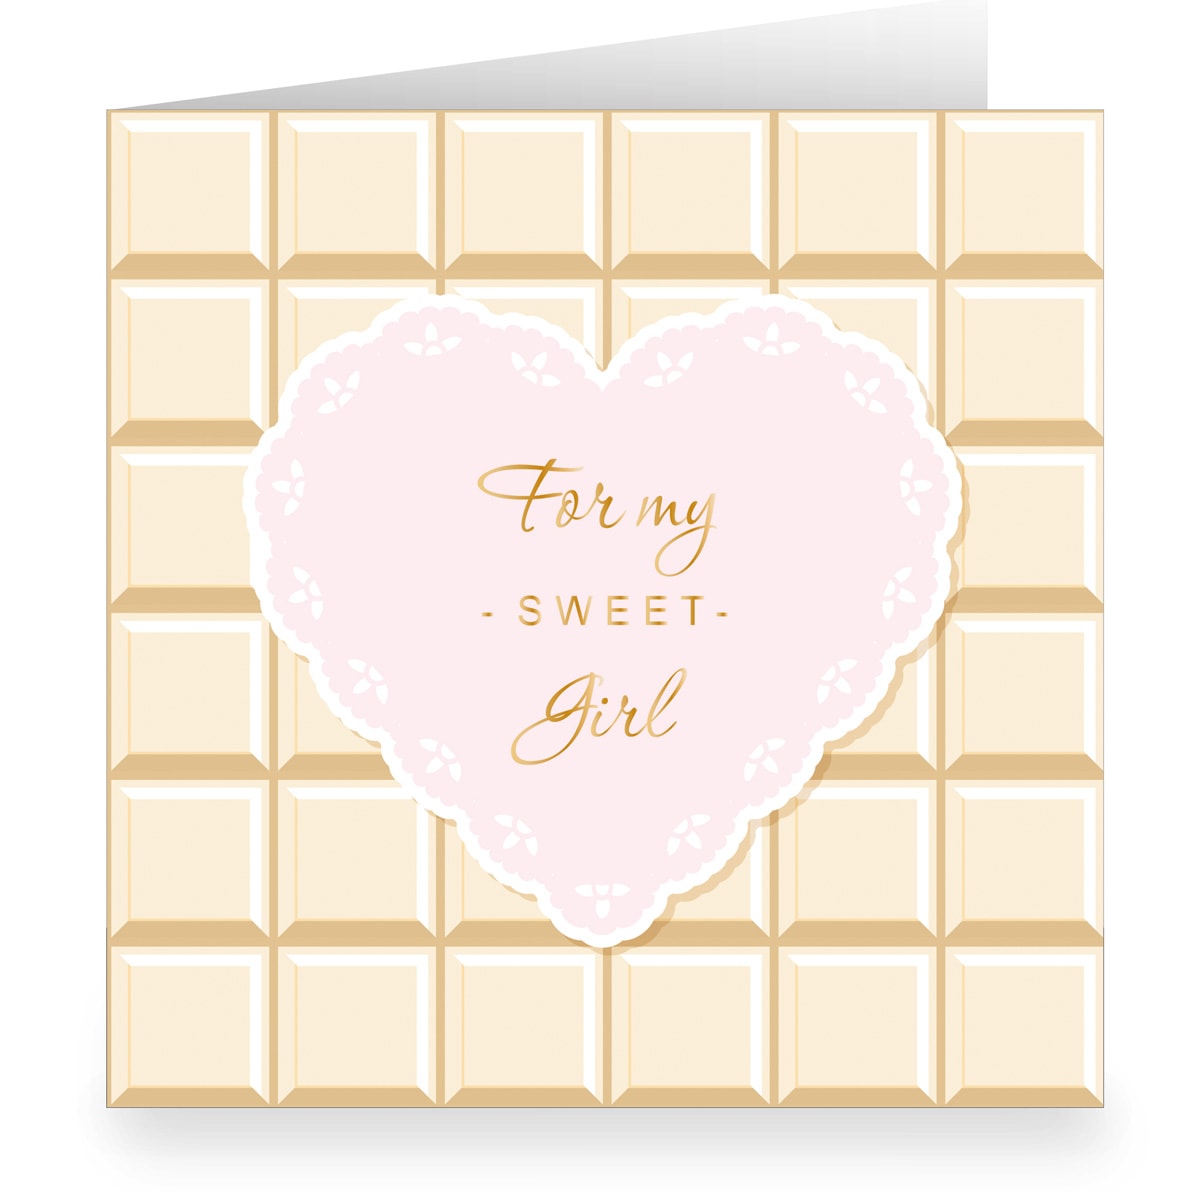 Kartenkaufrausch: Glückwunschkarte im Schokoladen Look aus unserer Geburtstags Papeterie in weiß